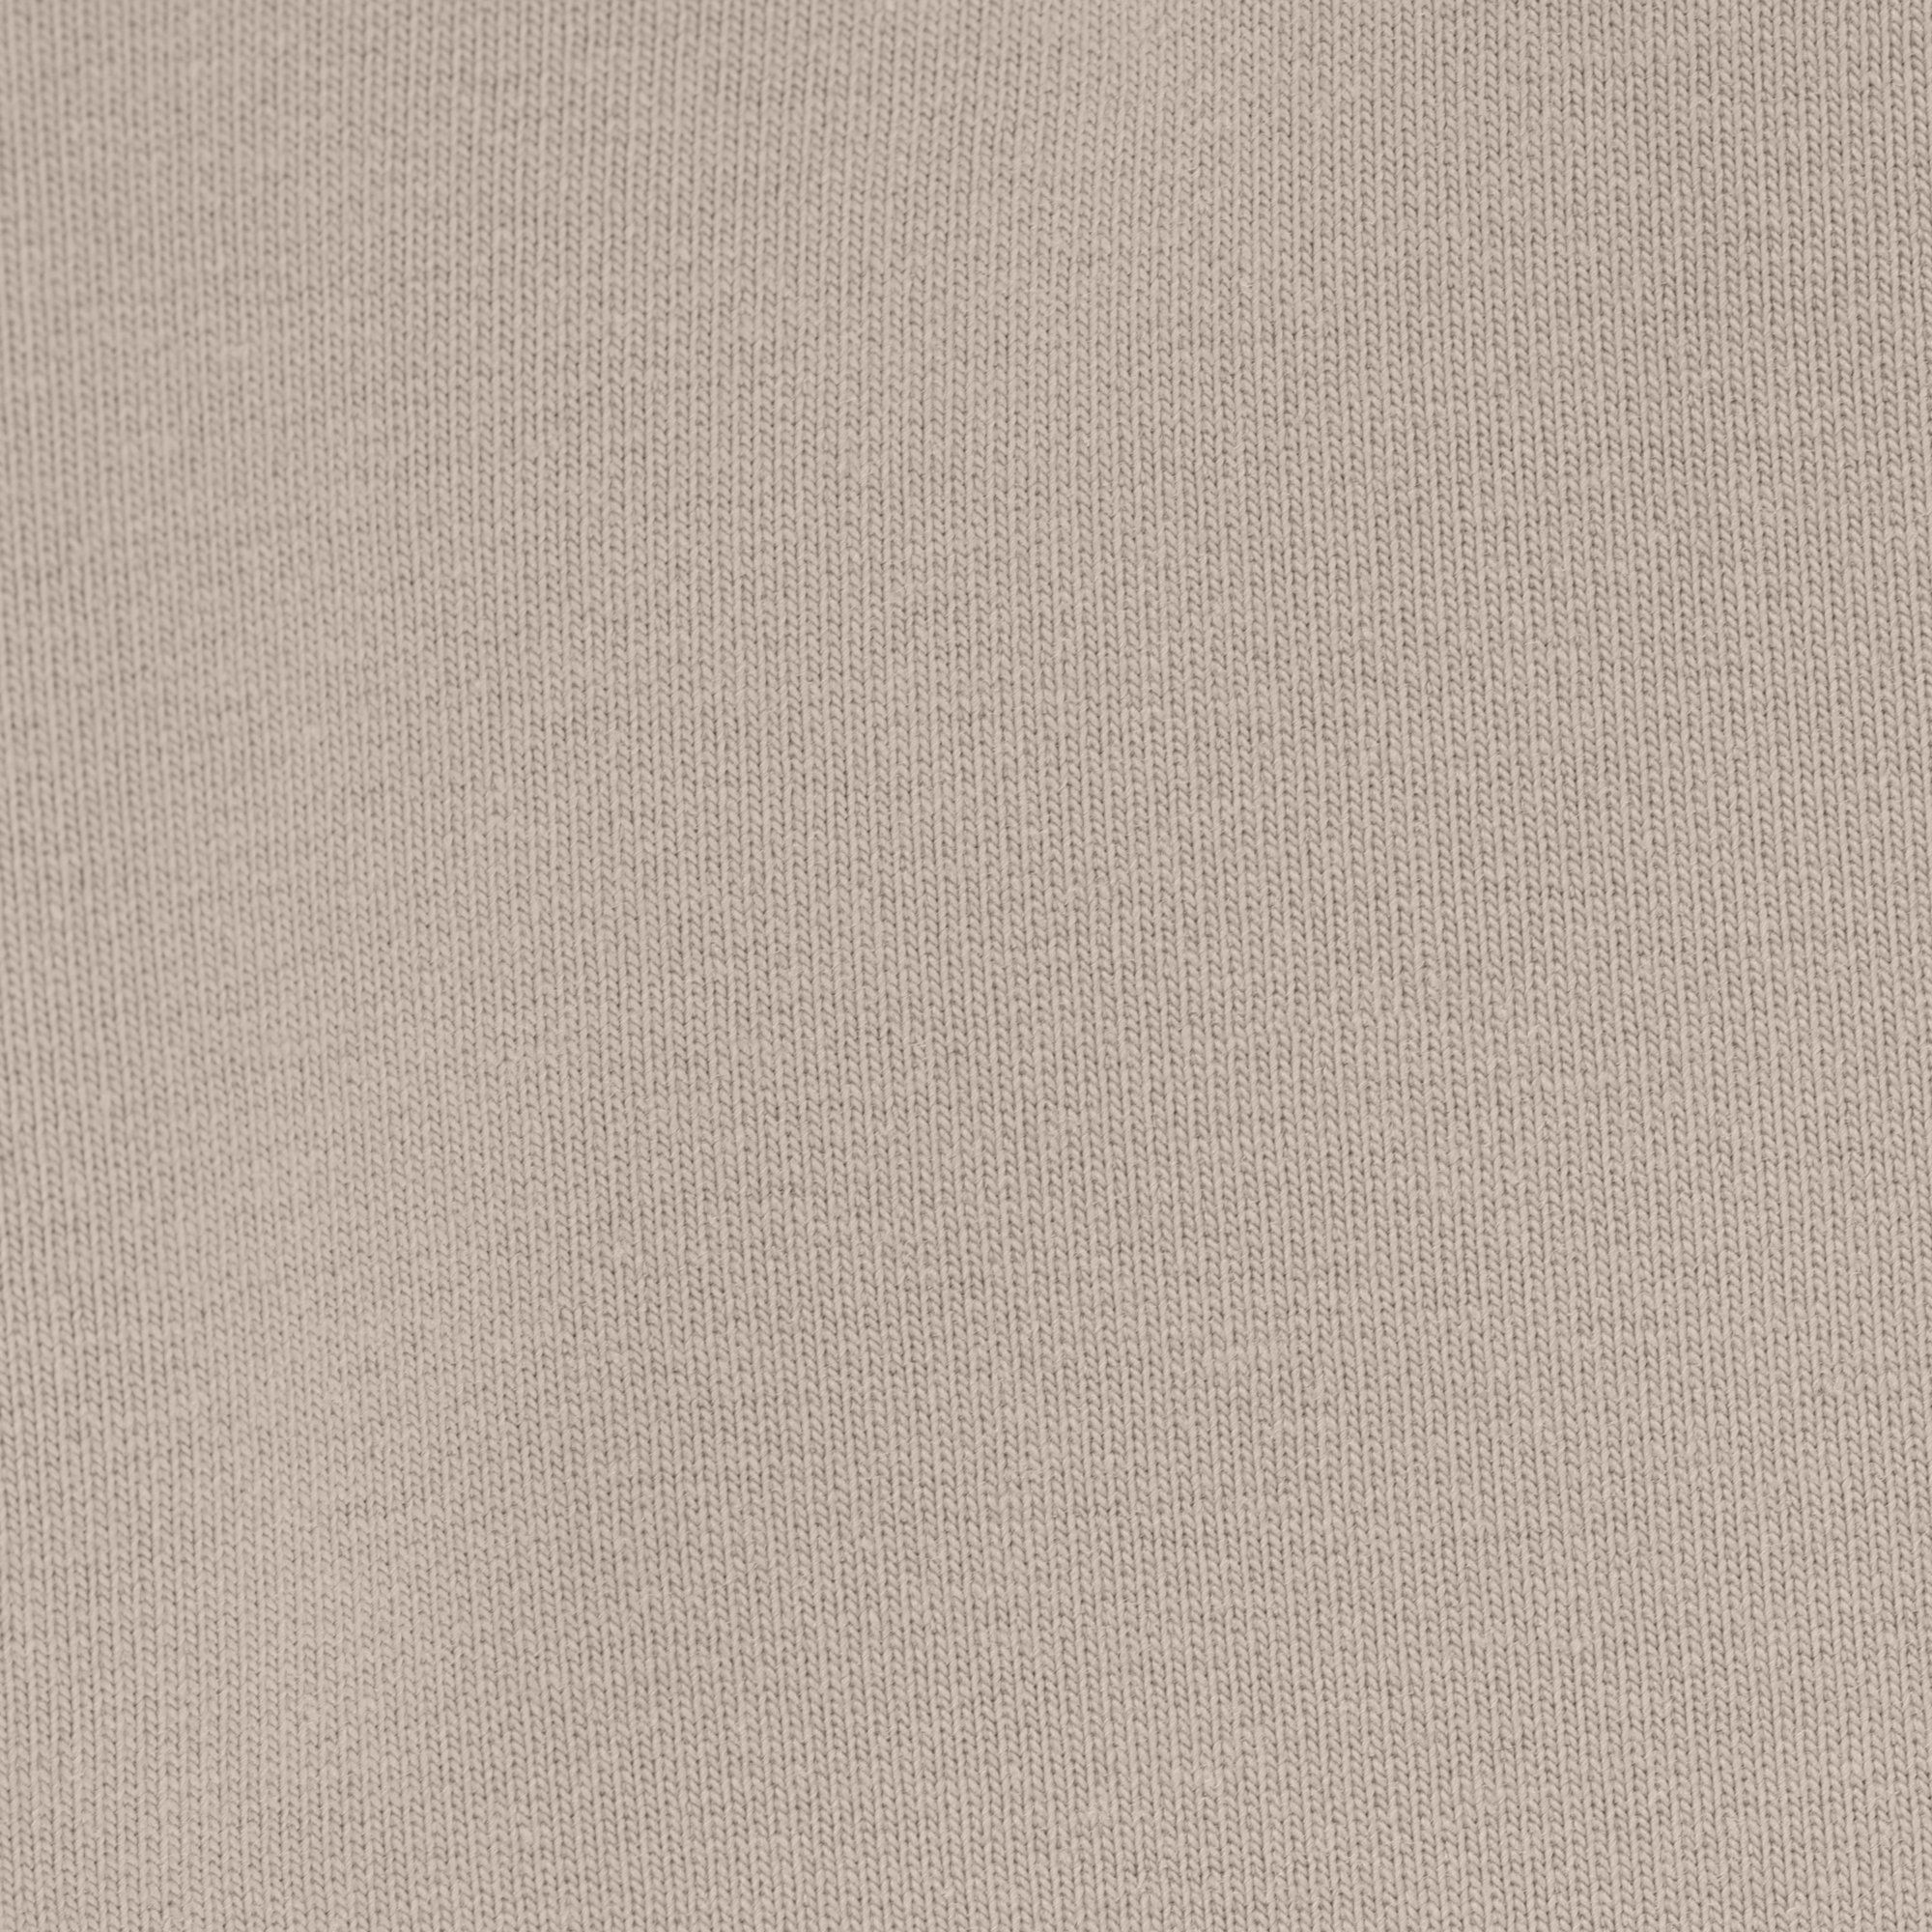 Женская толстовка Birlik светло-бежевая с капюшоном, цвет светло-бежевый, размер L - фото 2